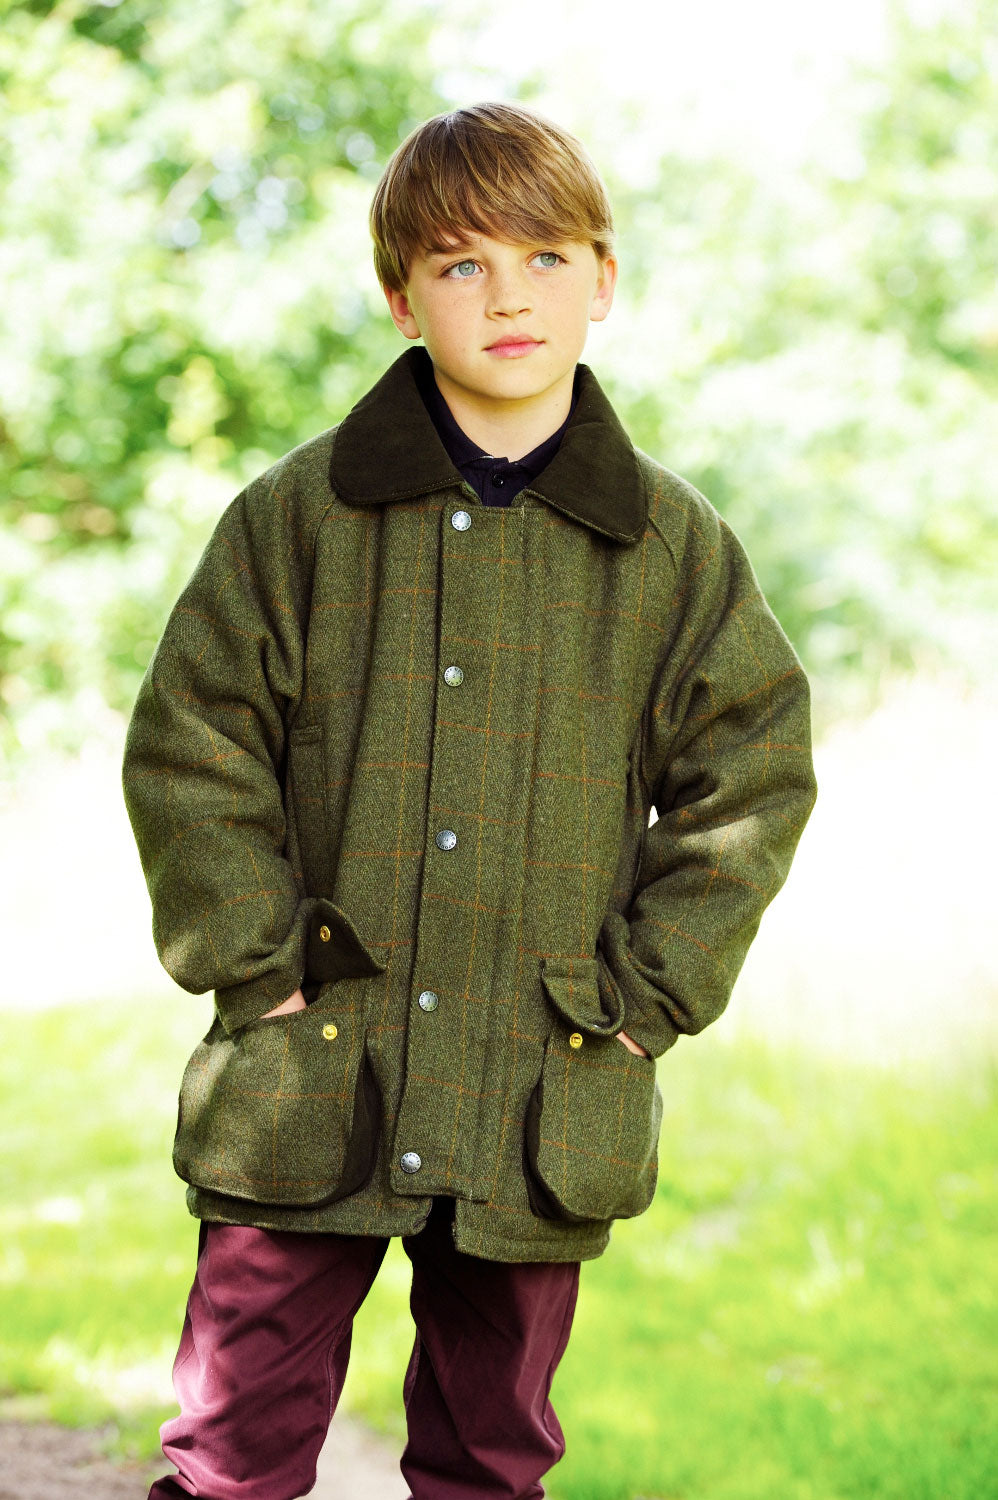 Child's Tweed Shooting Jacket by Bronte